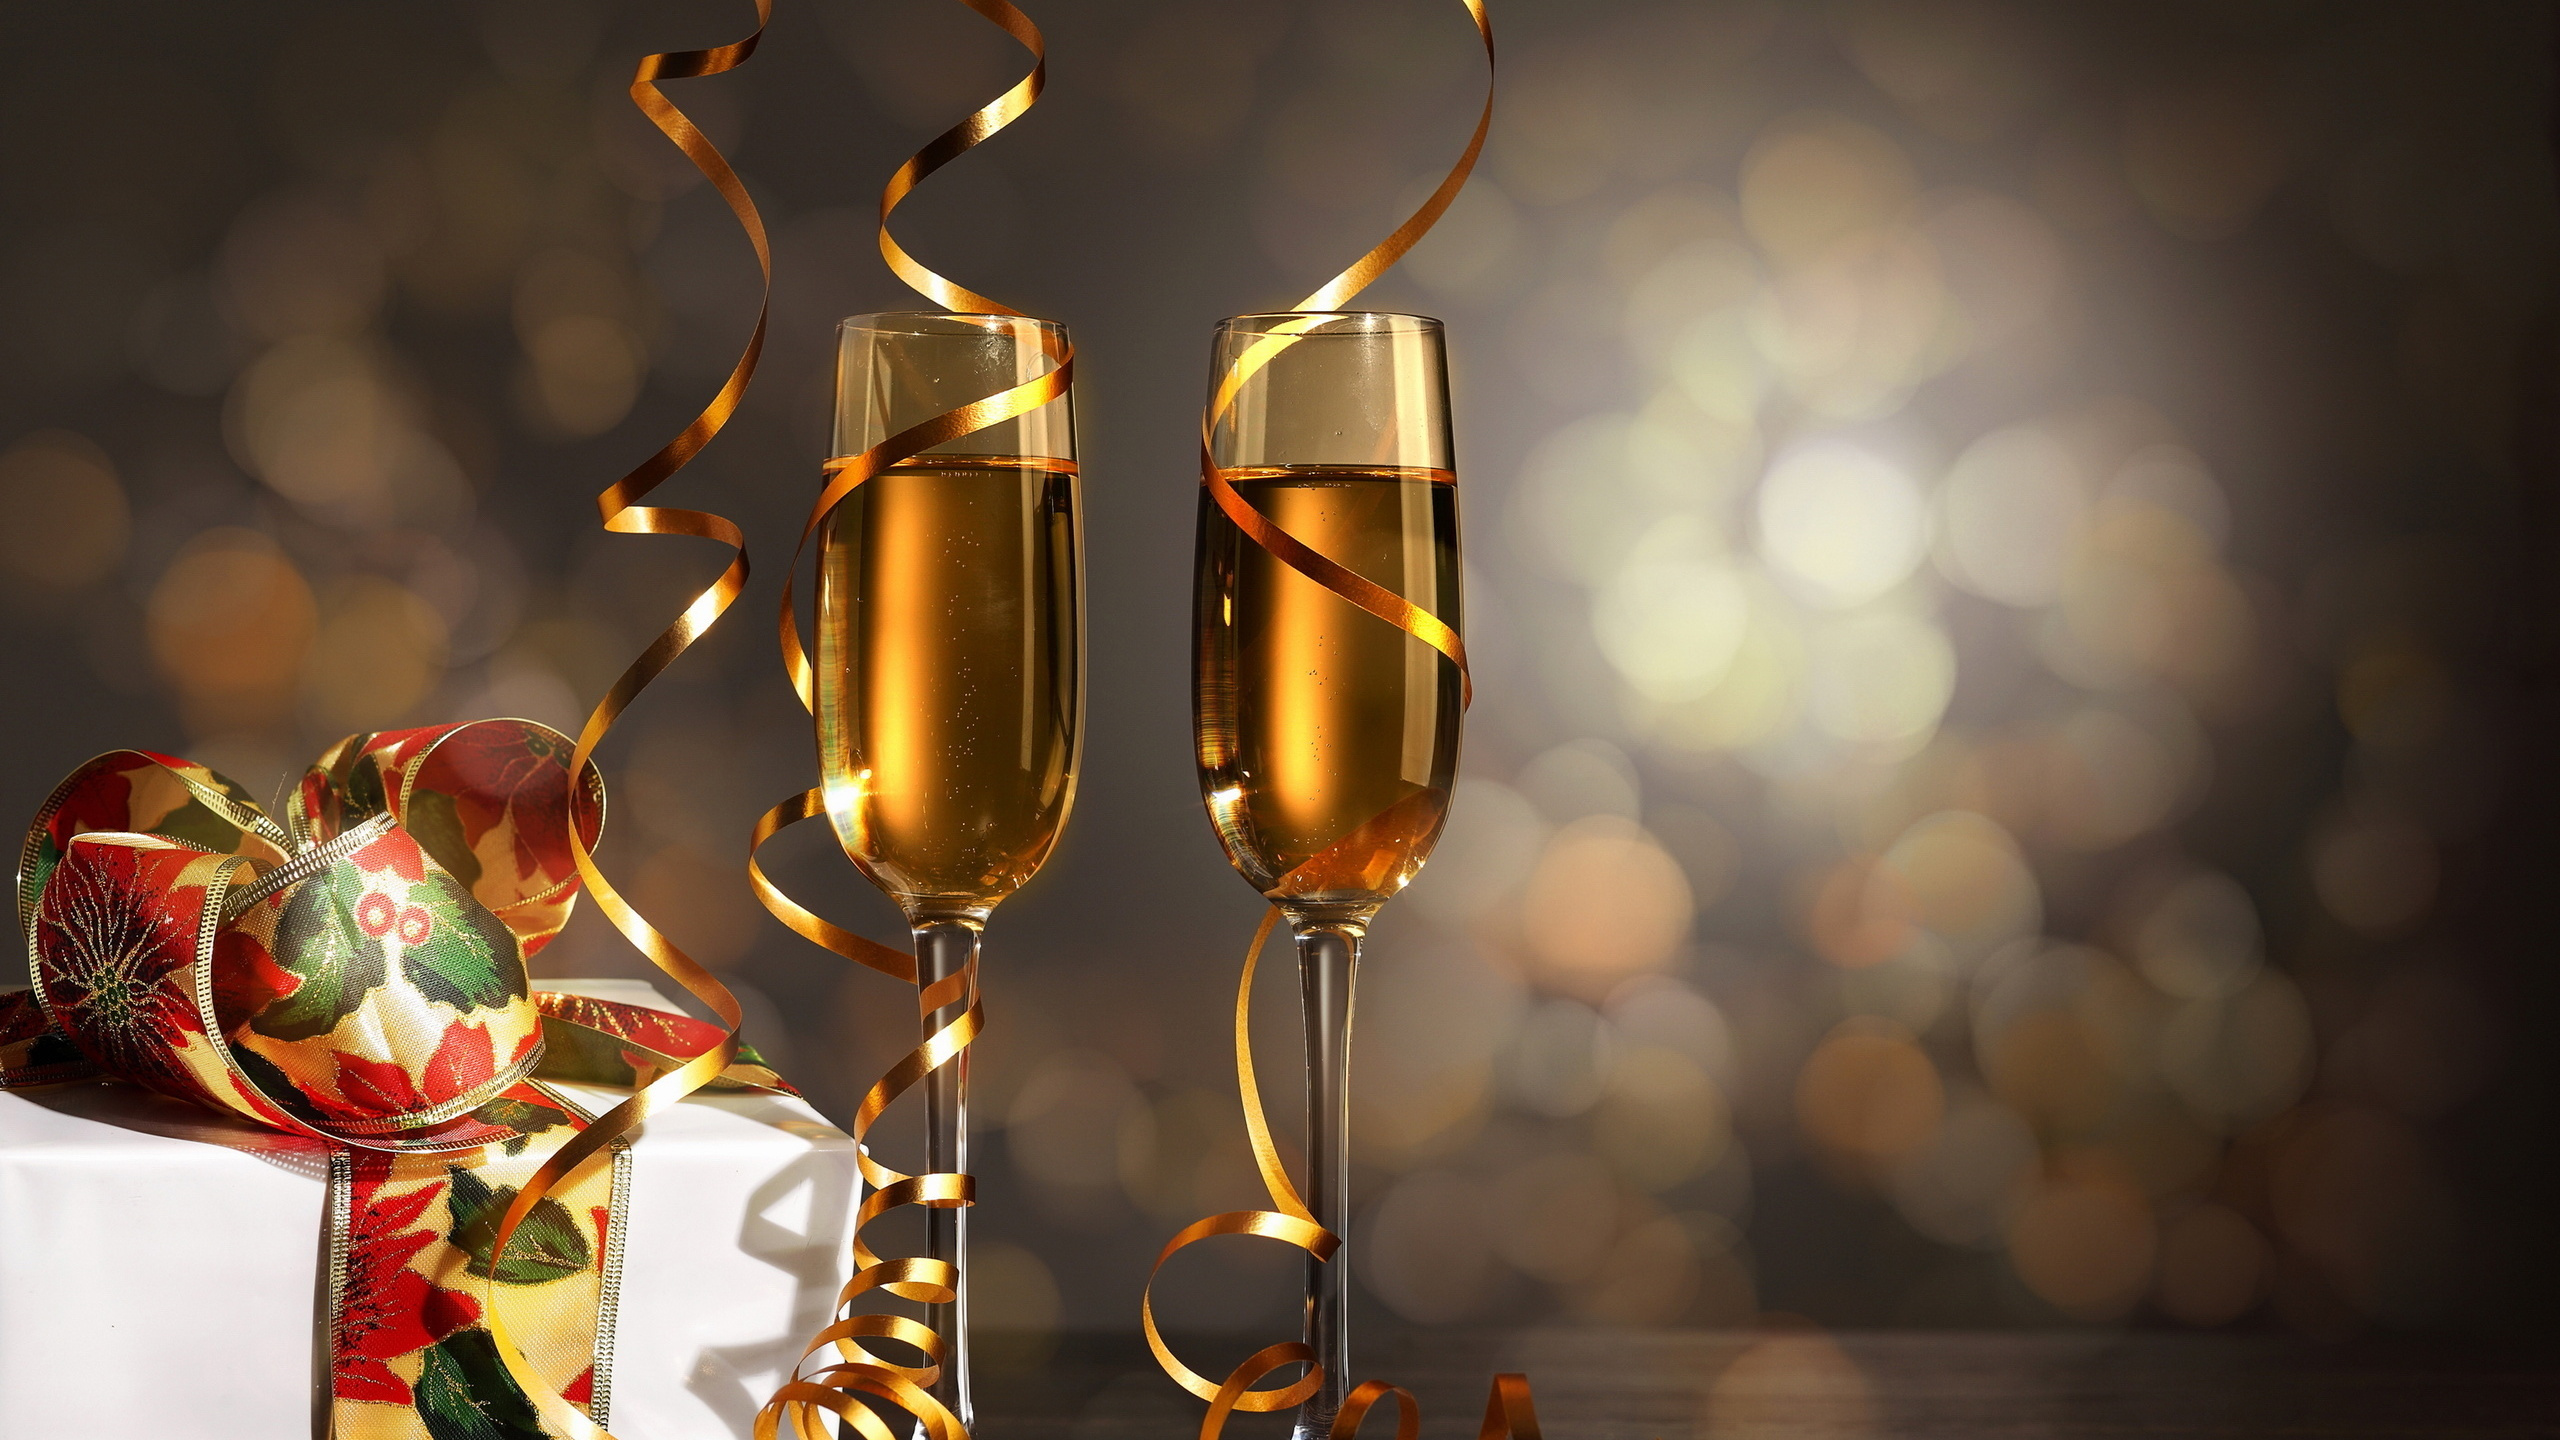 Champagner, Neujahr, Wein, Geburtstag, Champagner Gläsern. Wallpaper in 2560x1440 Resolution